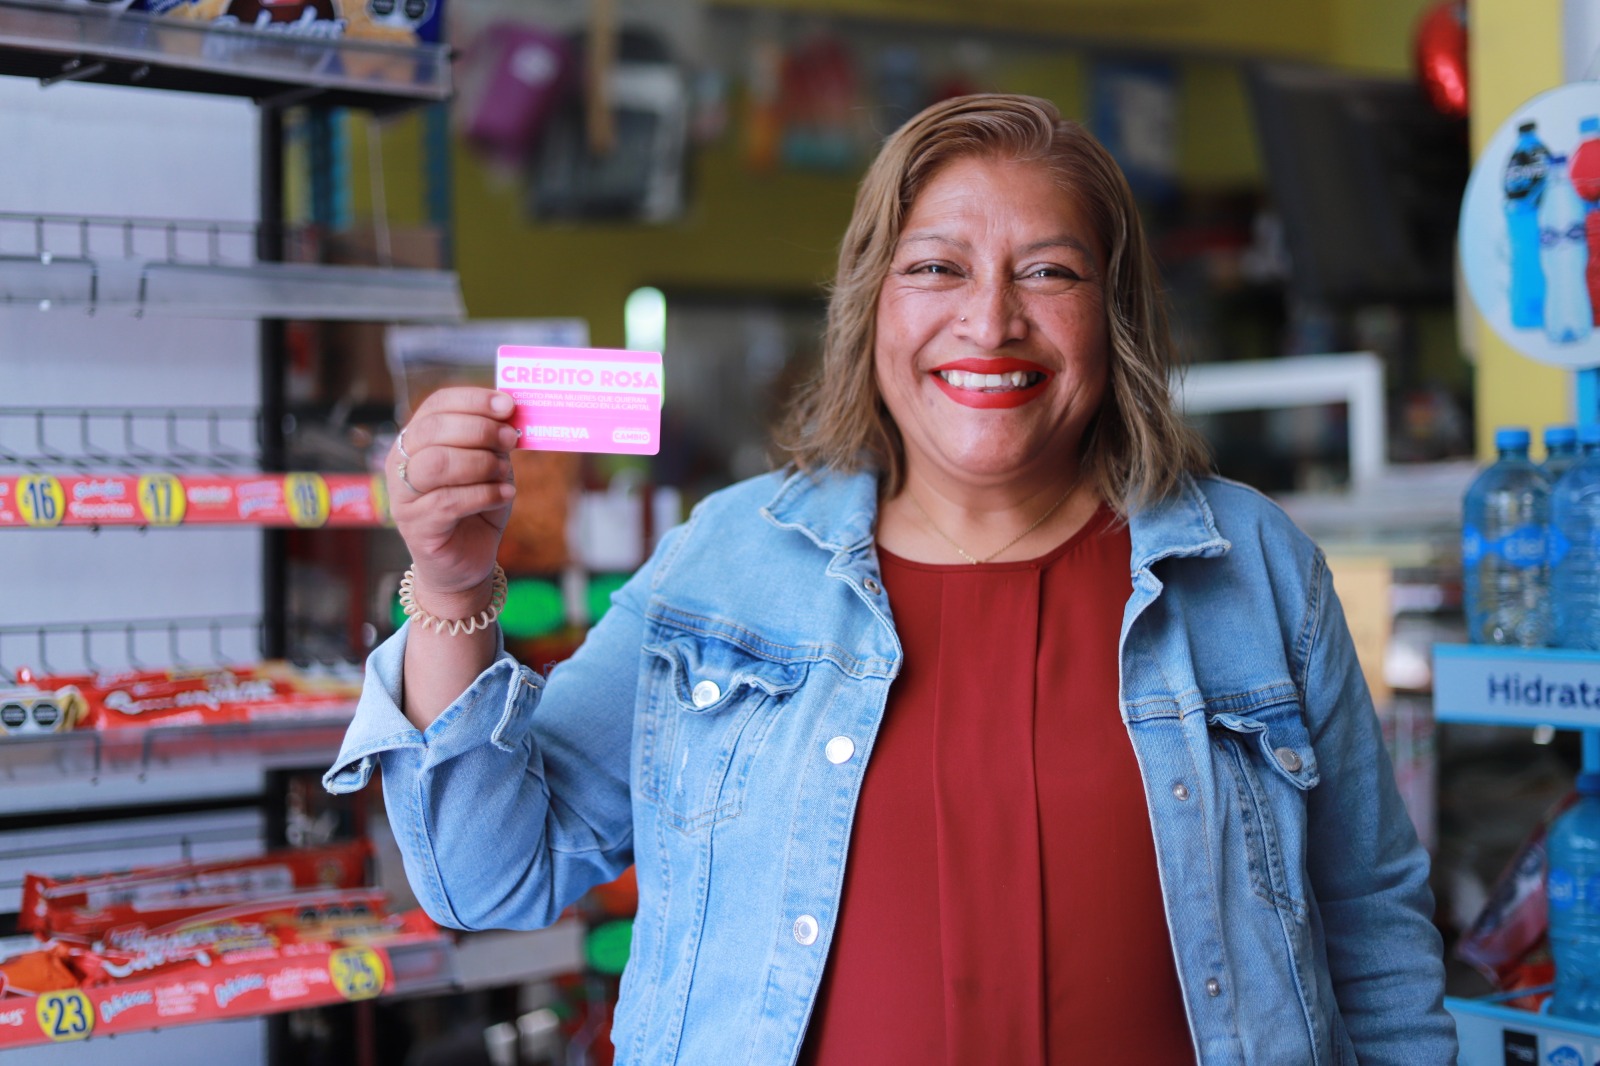 Anuncia Minerva creación de Crédito Rosa y cero pago en licencia de funcionamiento para emprendedoras